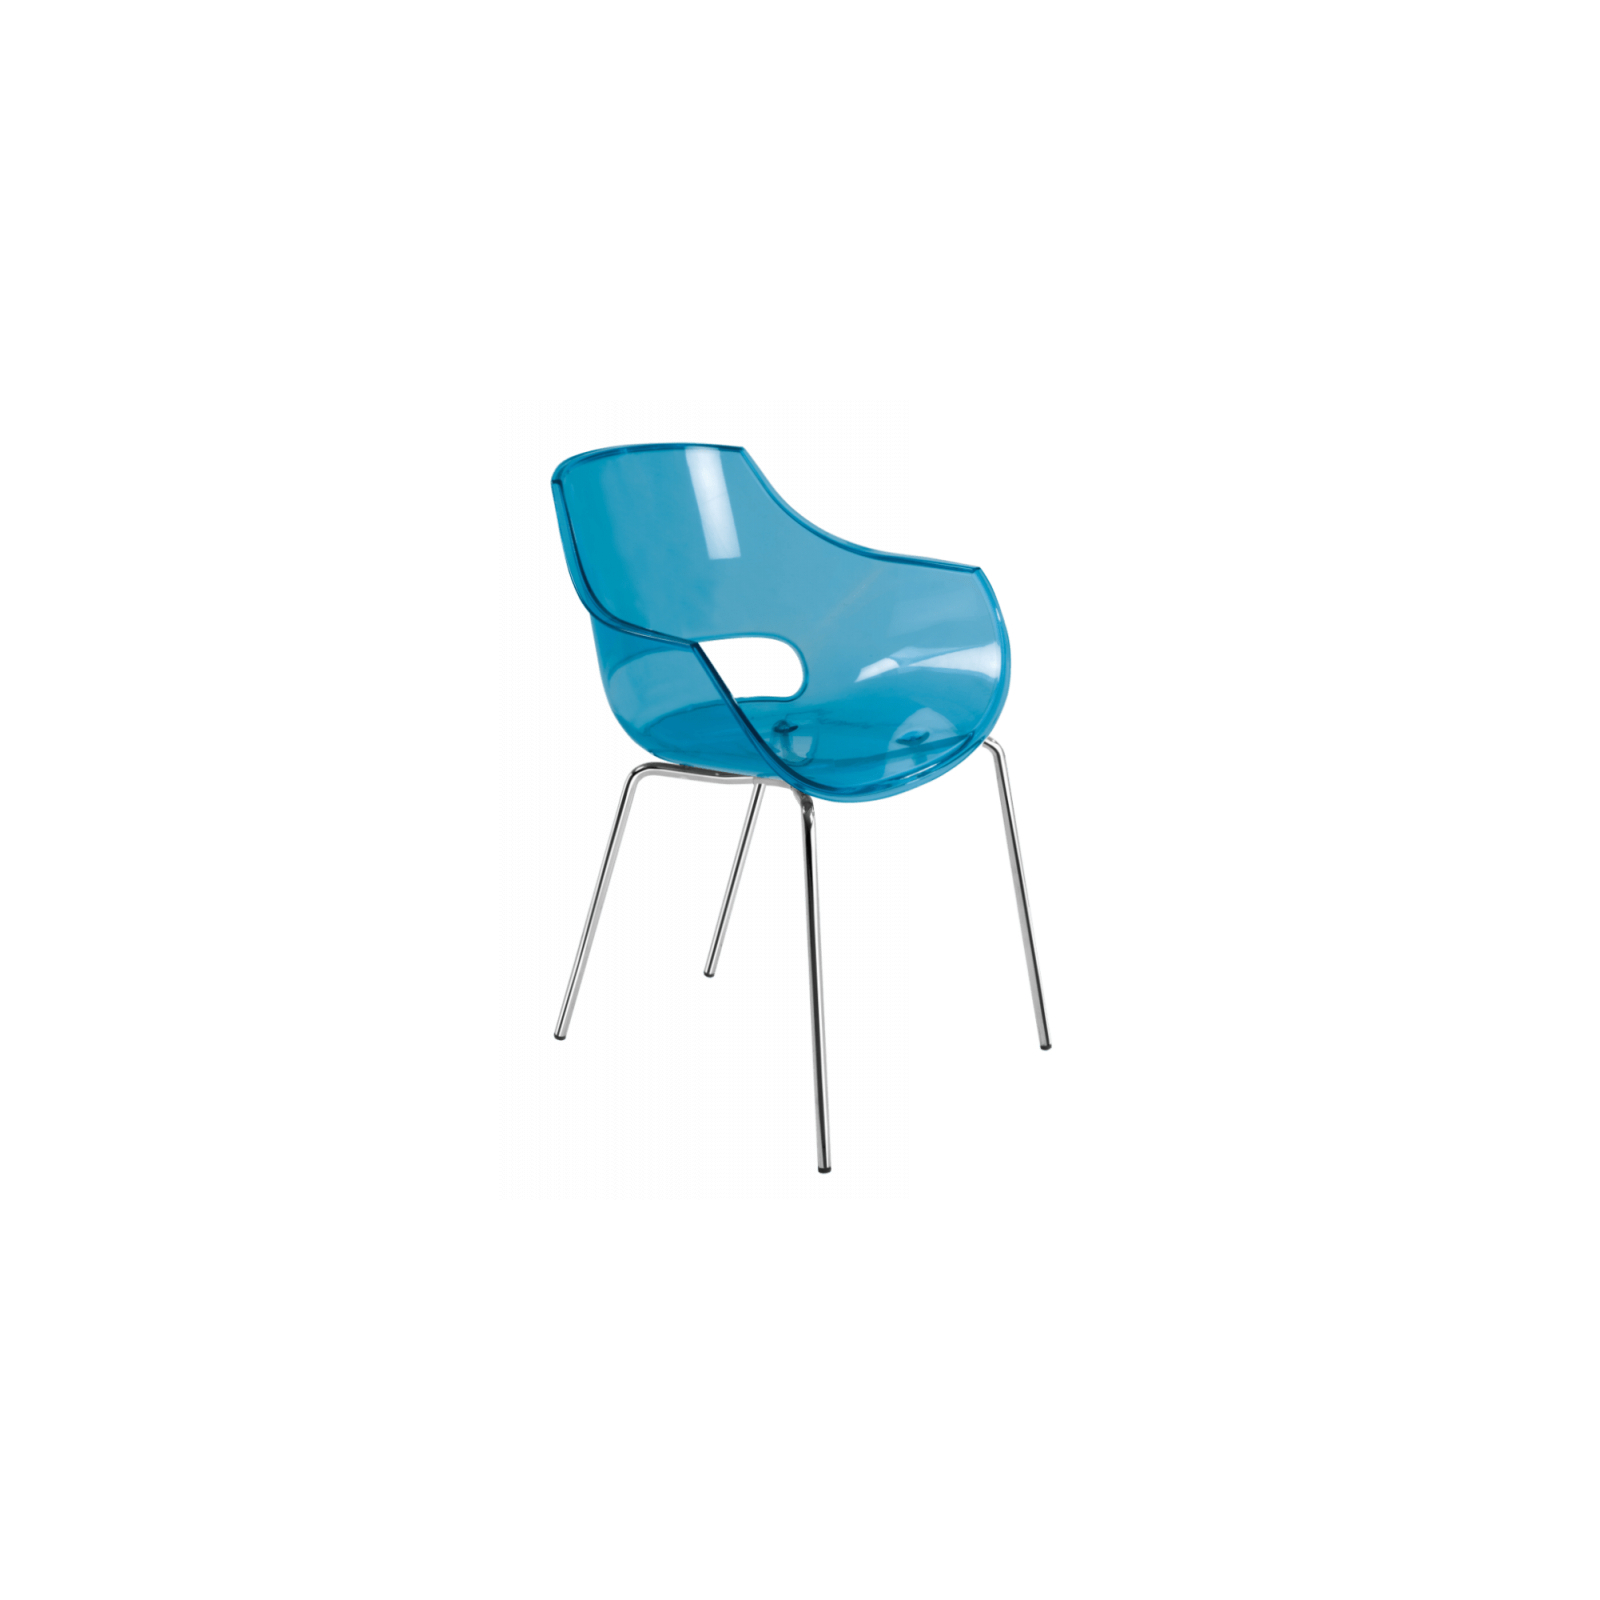 Кухонный стул PAPATYA OPAL, сиденье прозрачно-синее, ножки хромированные (2458)